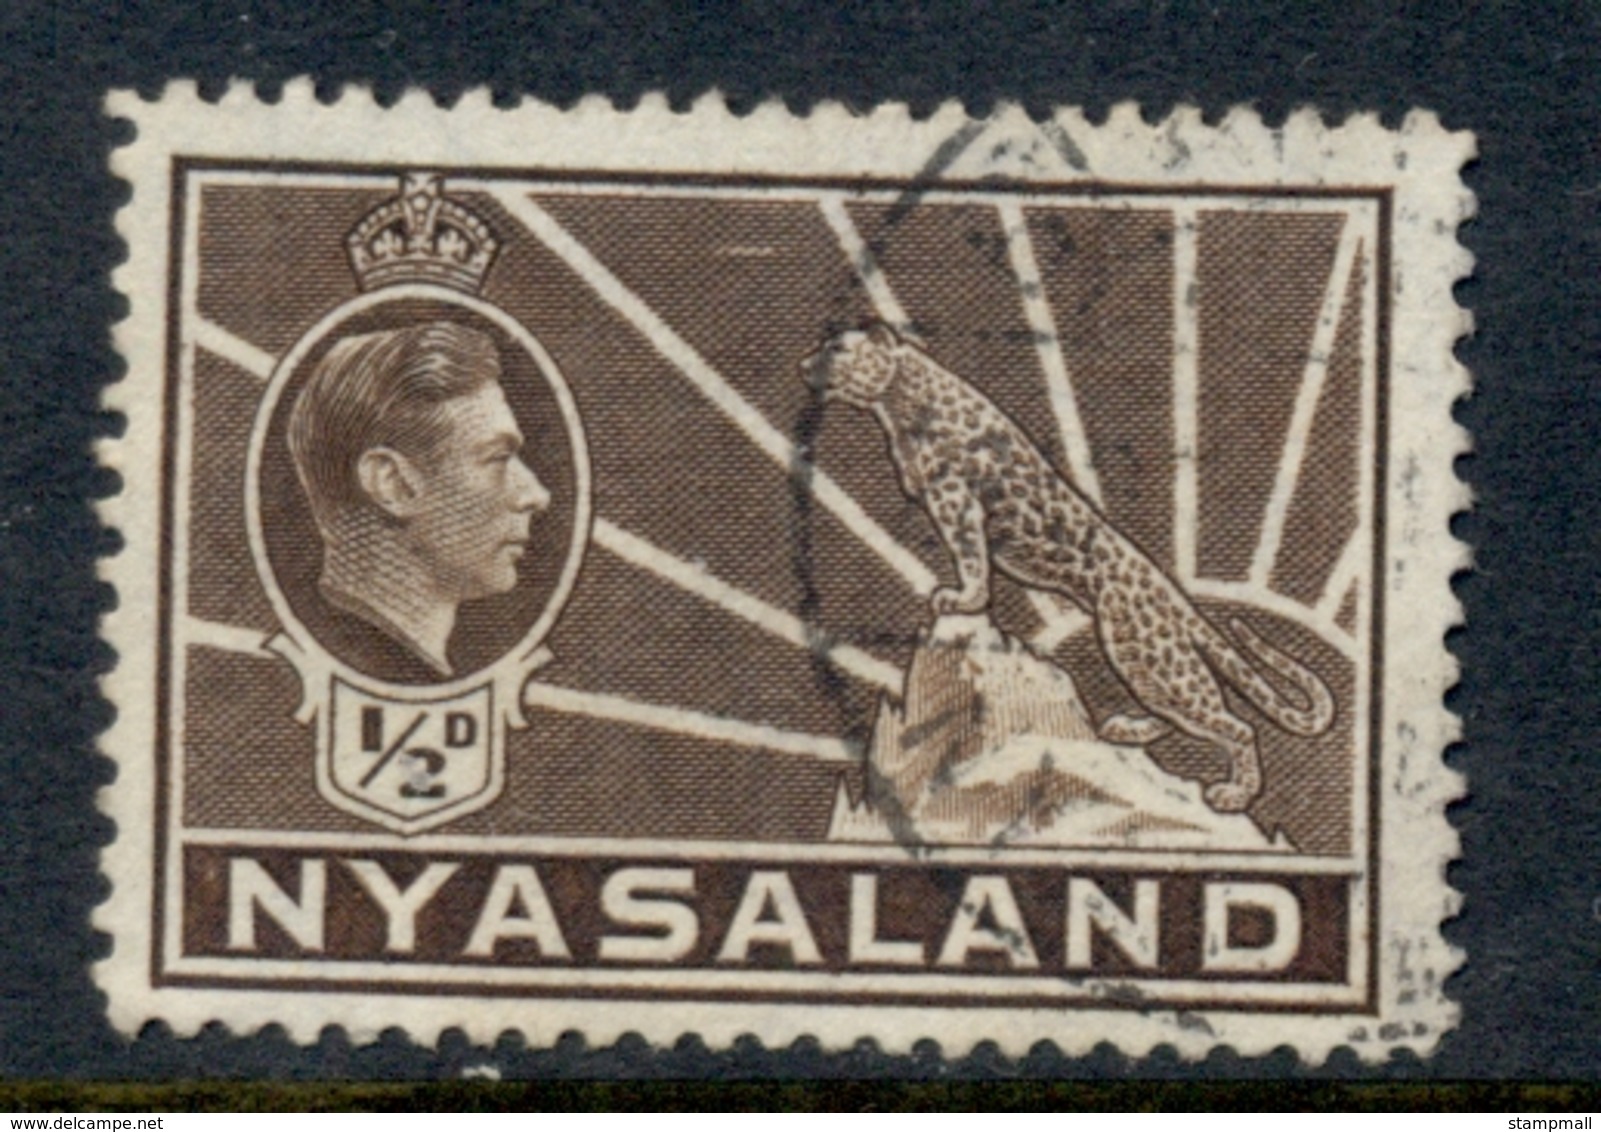 Nyasaland 1938-44 KGVI & Leopard 0.5d Brown FU - Nyassaland (1907-1953)